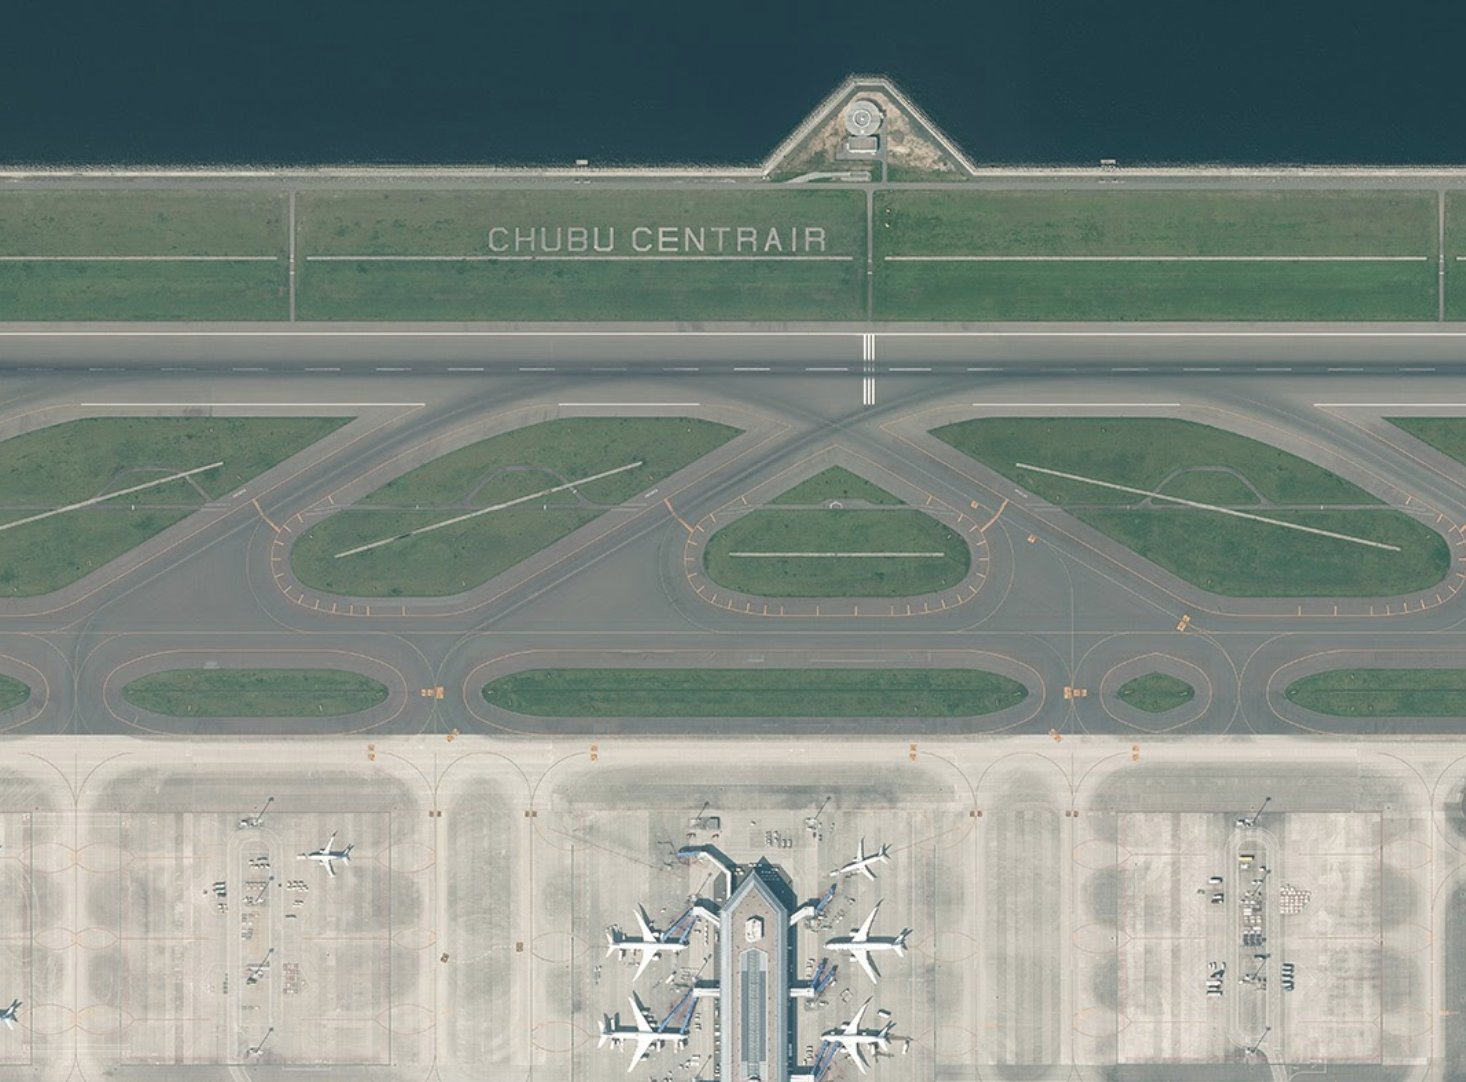 中部国際空港セントレア セントレア用語図鑑 着陸帯 滑走路 を取り囲んだ幅300m 長さ36mの一帯を指す 万が一航空機が滑走路から逸脱した場合 人命及び航空機への影響を最小限に抑えるため緑地帯が設けられている 空港名が記されることが